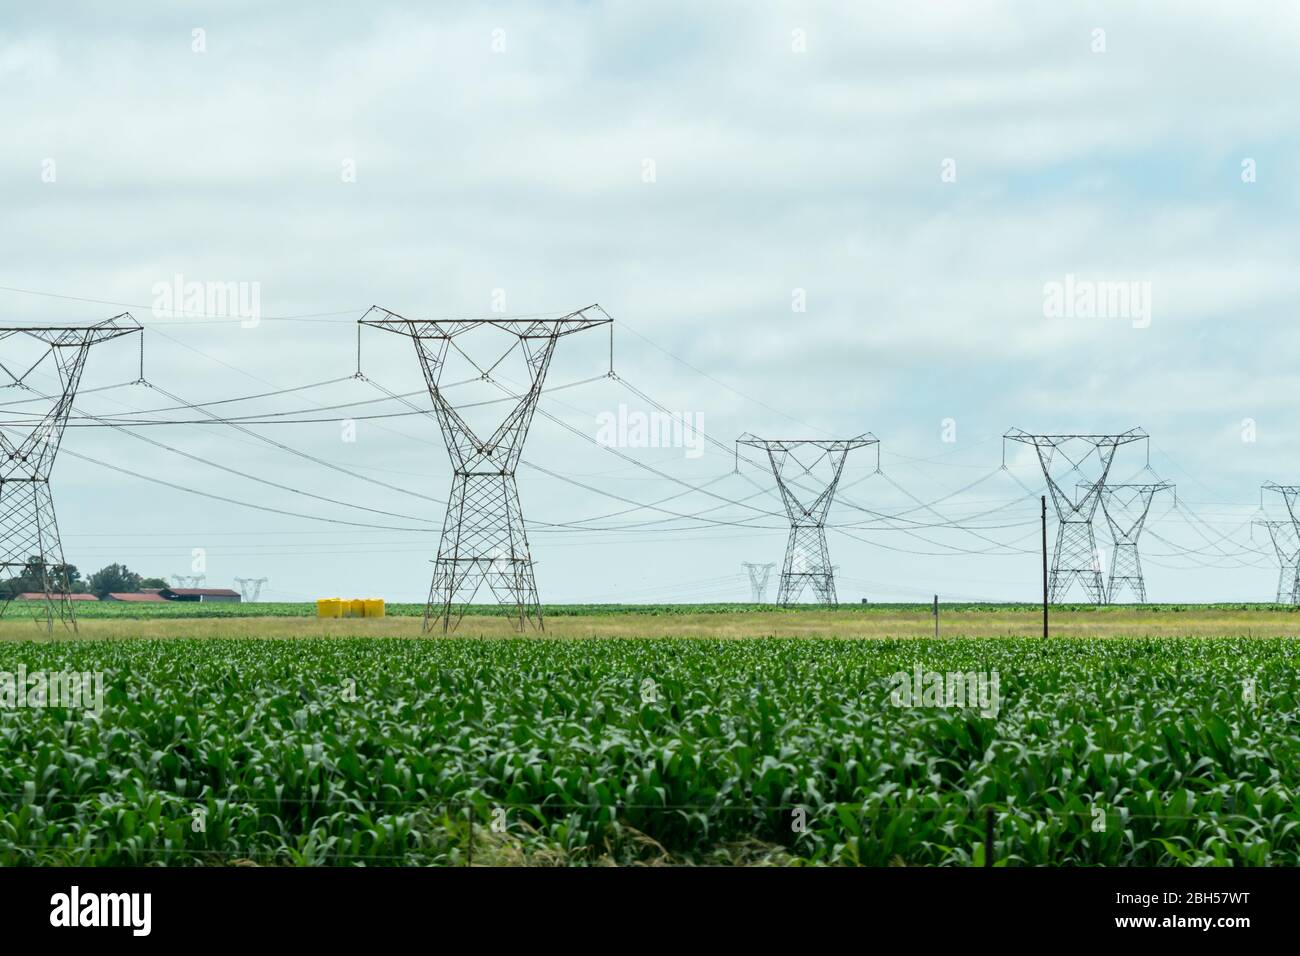 Elettricità ad alta tensione o piloni elettrici e cavi in un ambiente agricolo o in un'area agricola in Sudafrica concetto di energia in Africa Foto Stock